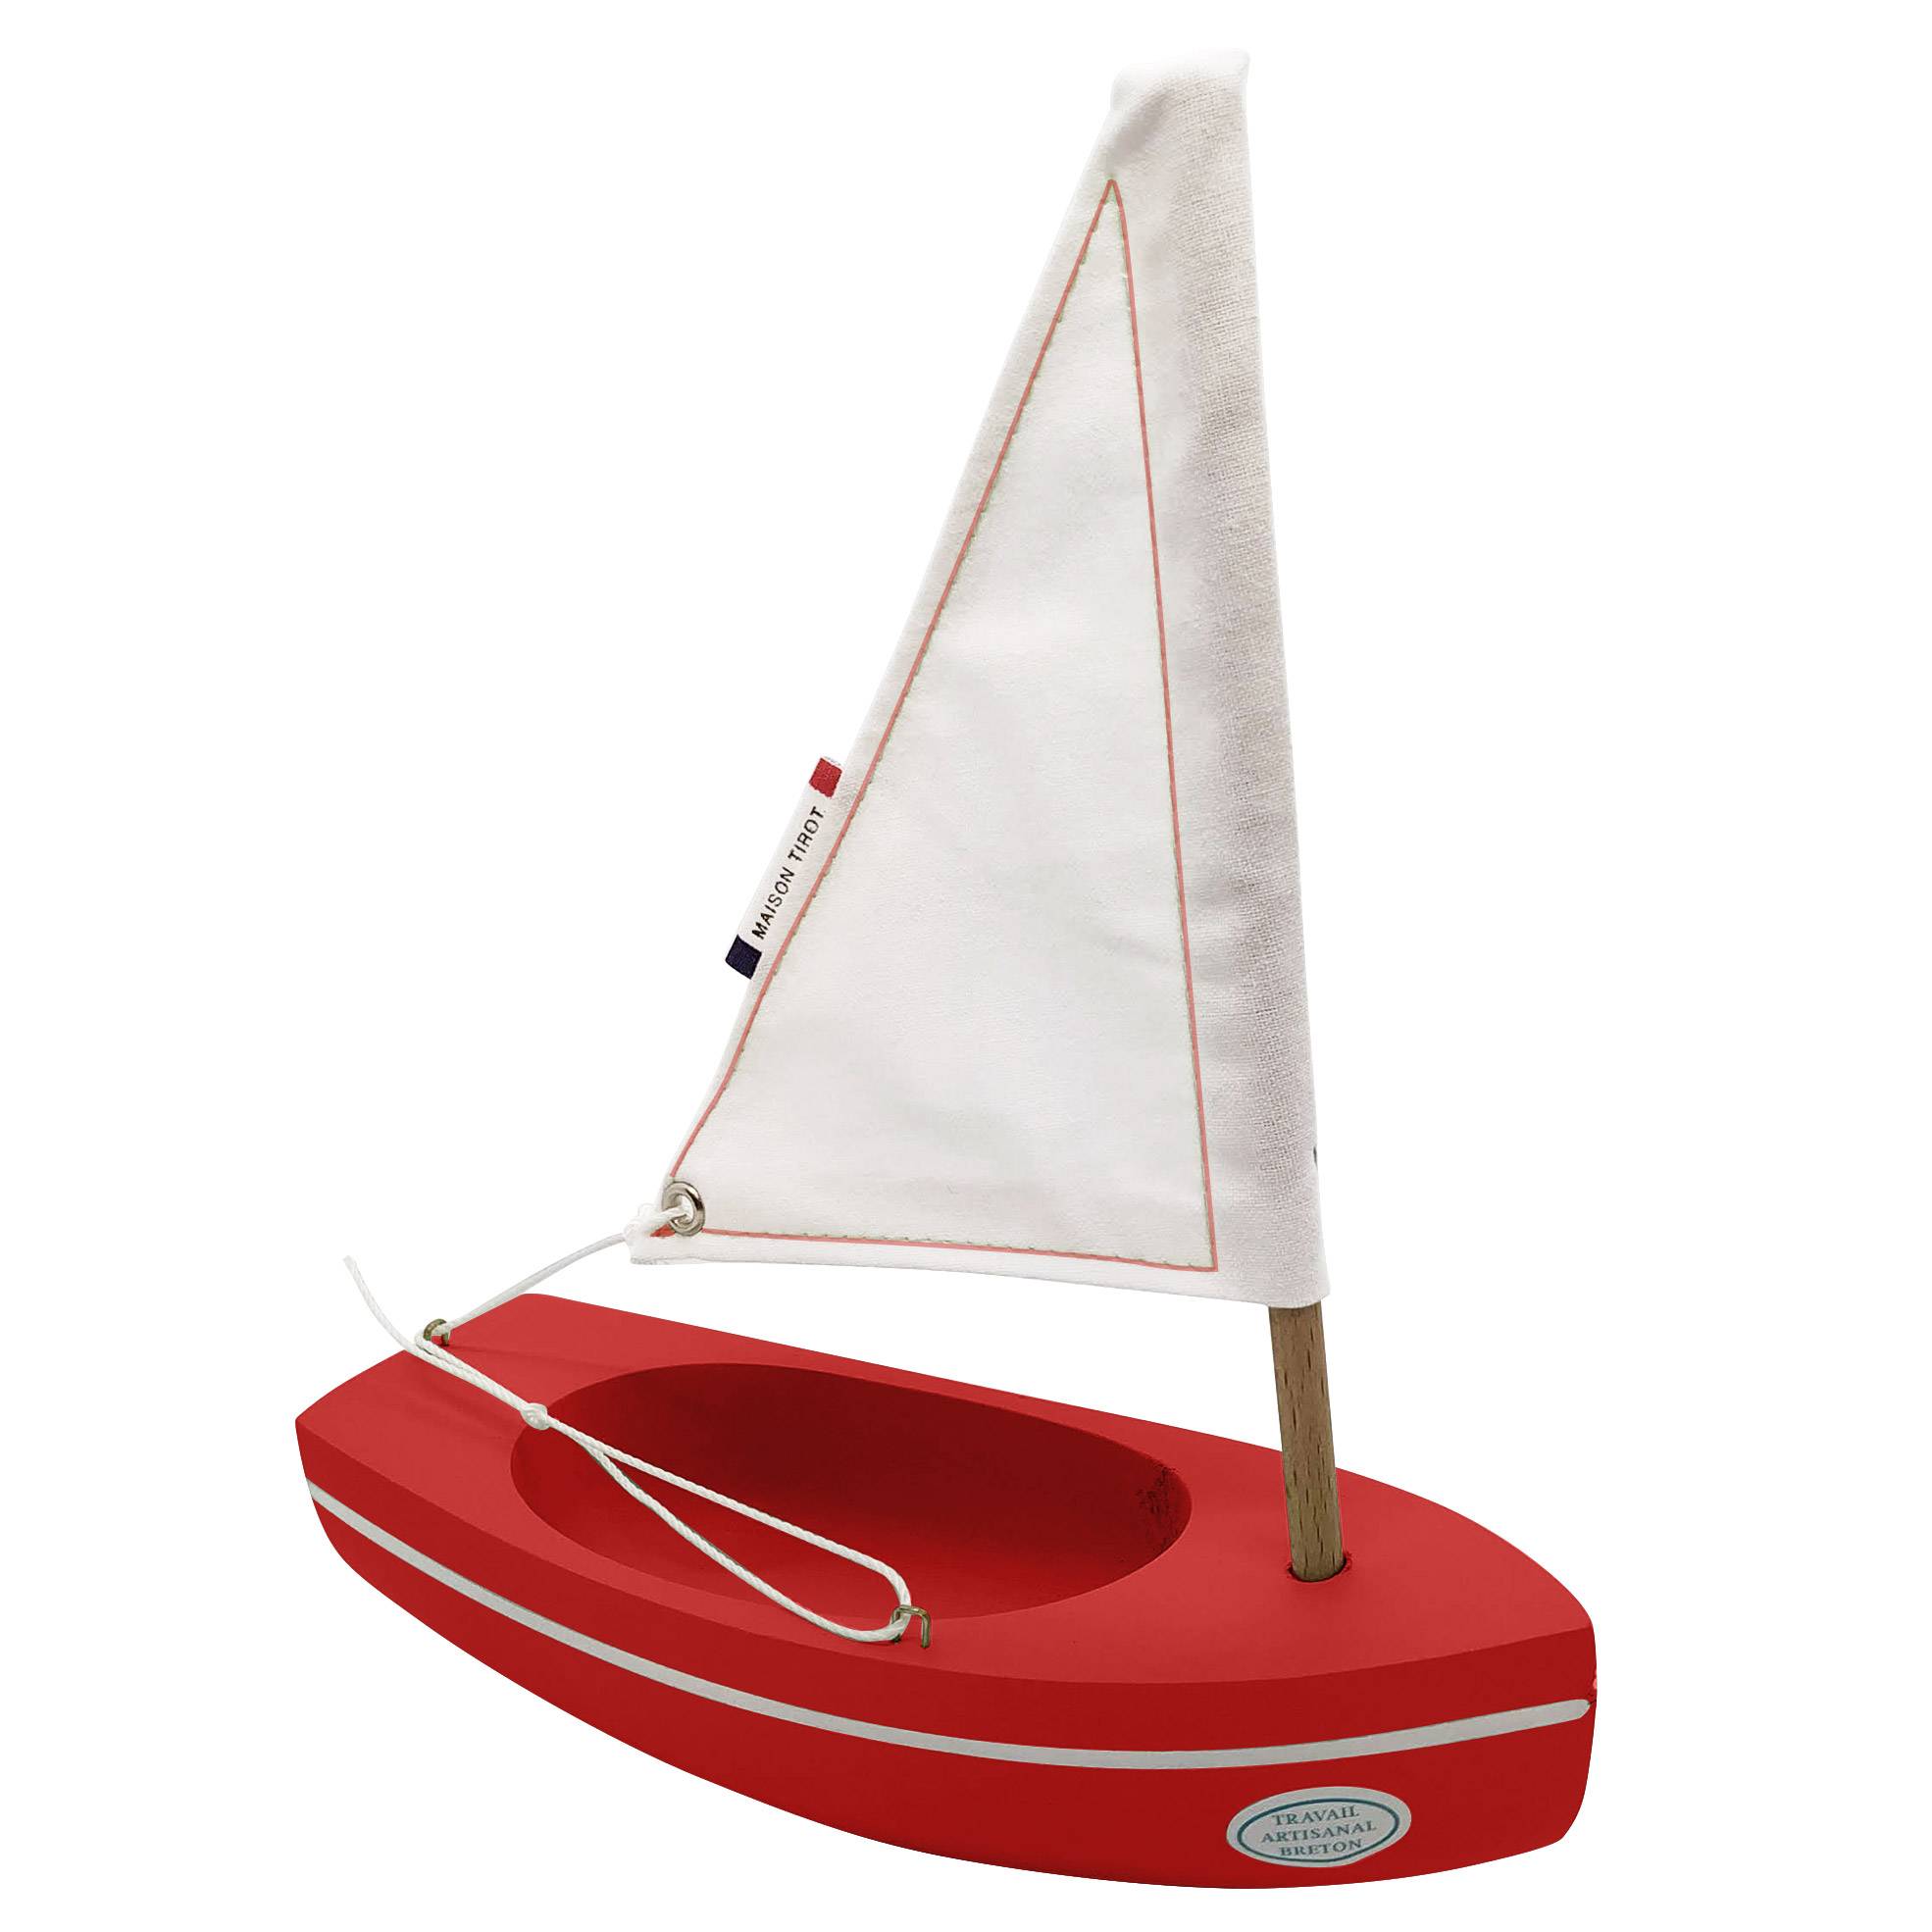 Petit bateau en bois-bleu-Voilier jouet pour décoration ou jeux de société